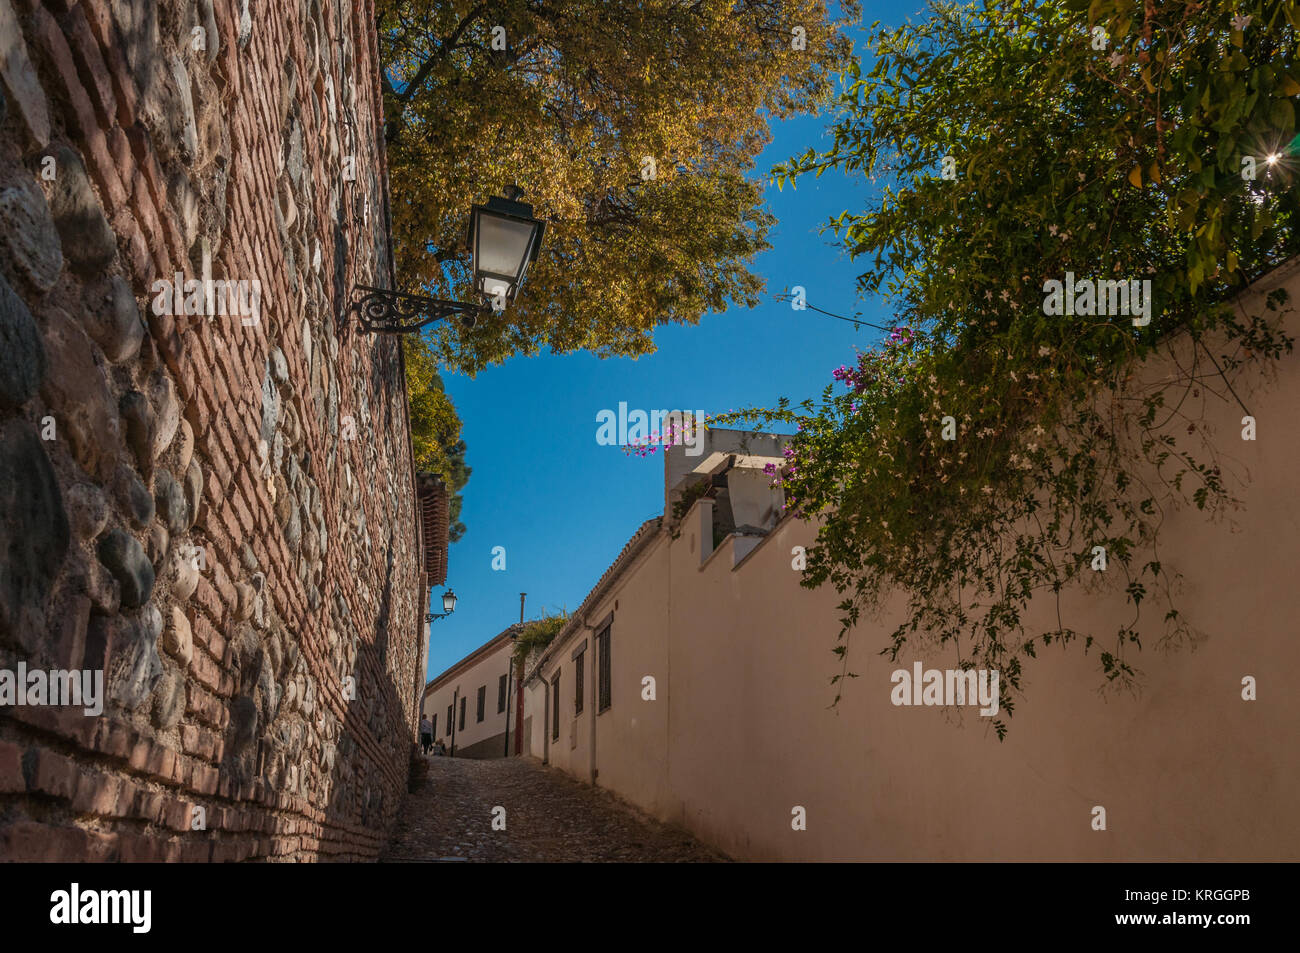 Une étroite ruelle pavée escalade vers le haut entre un mur de briques et d'un enduit. Feuillage jaune et vert jardin d'arbres sur les murs. Banque D'Images